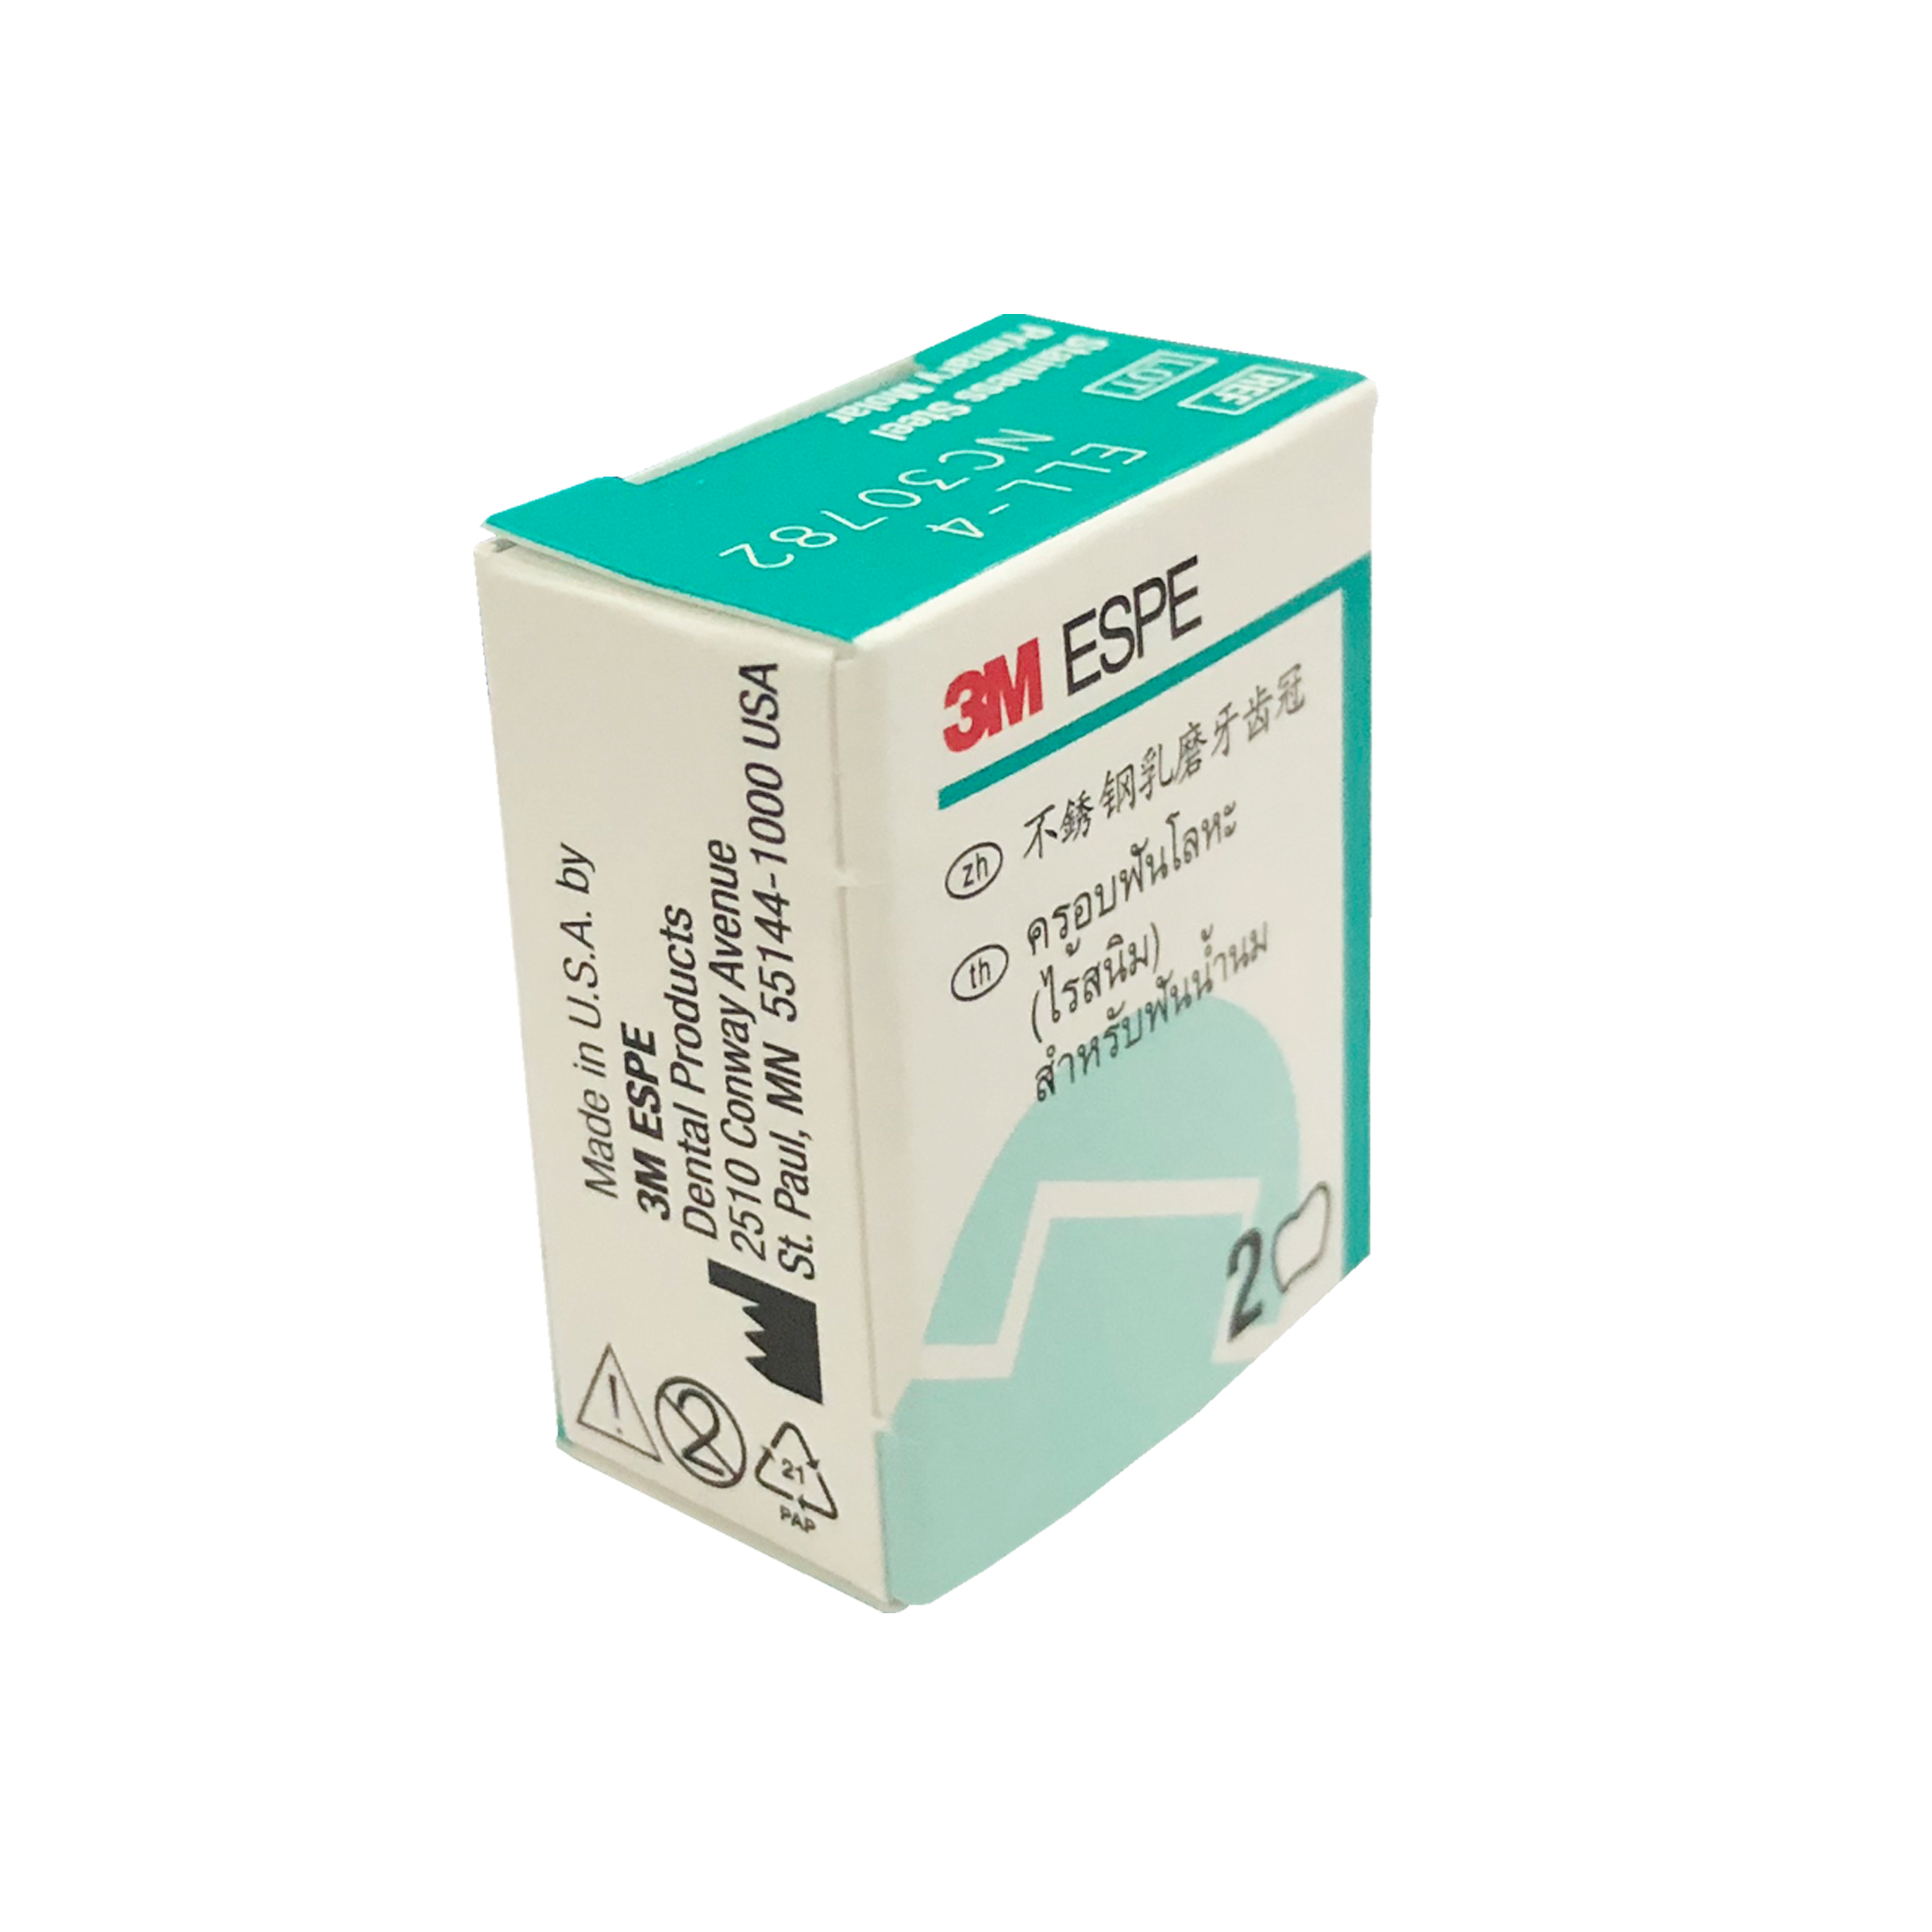 Mão răng sữa E-UR-4,5,6 (cung 1)